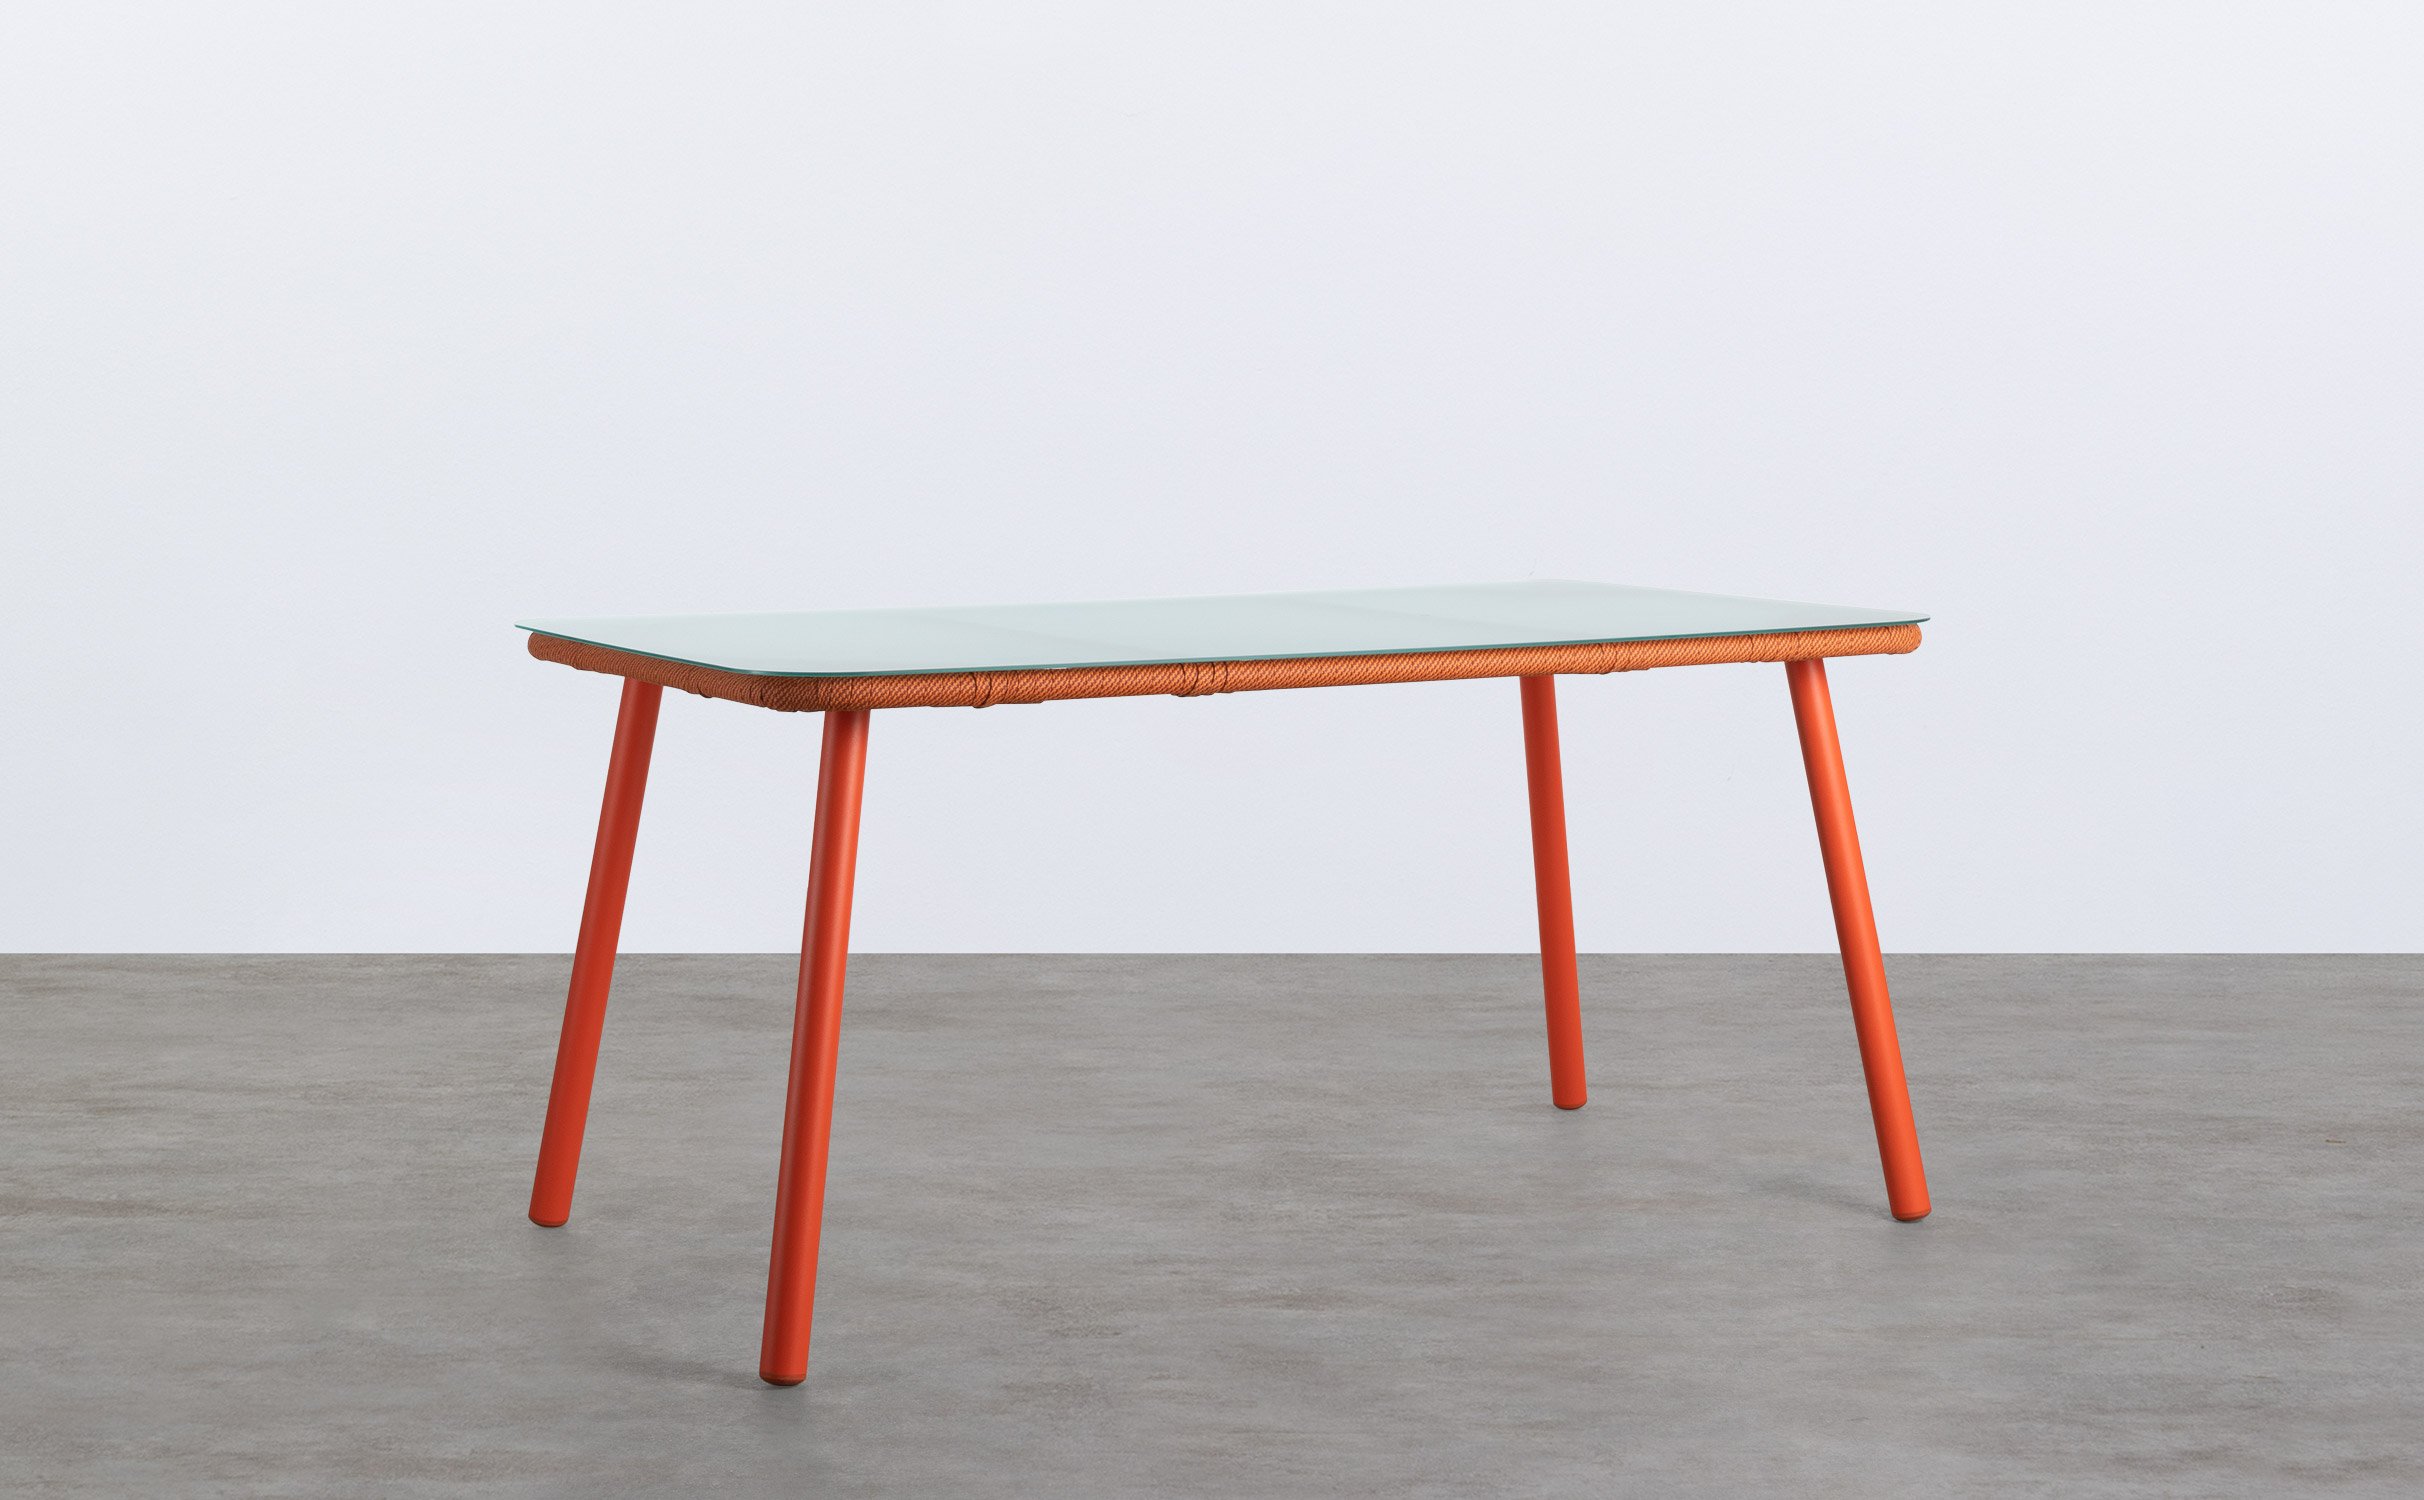 Rechteckiger Outdoor Tisch aus Aluminium und Glas (160x90 cm) Drian, Galeriebild 1